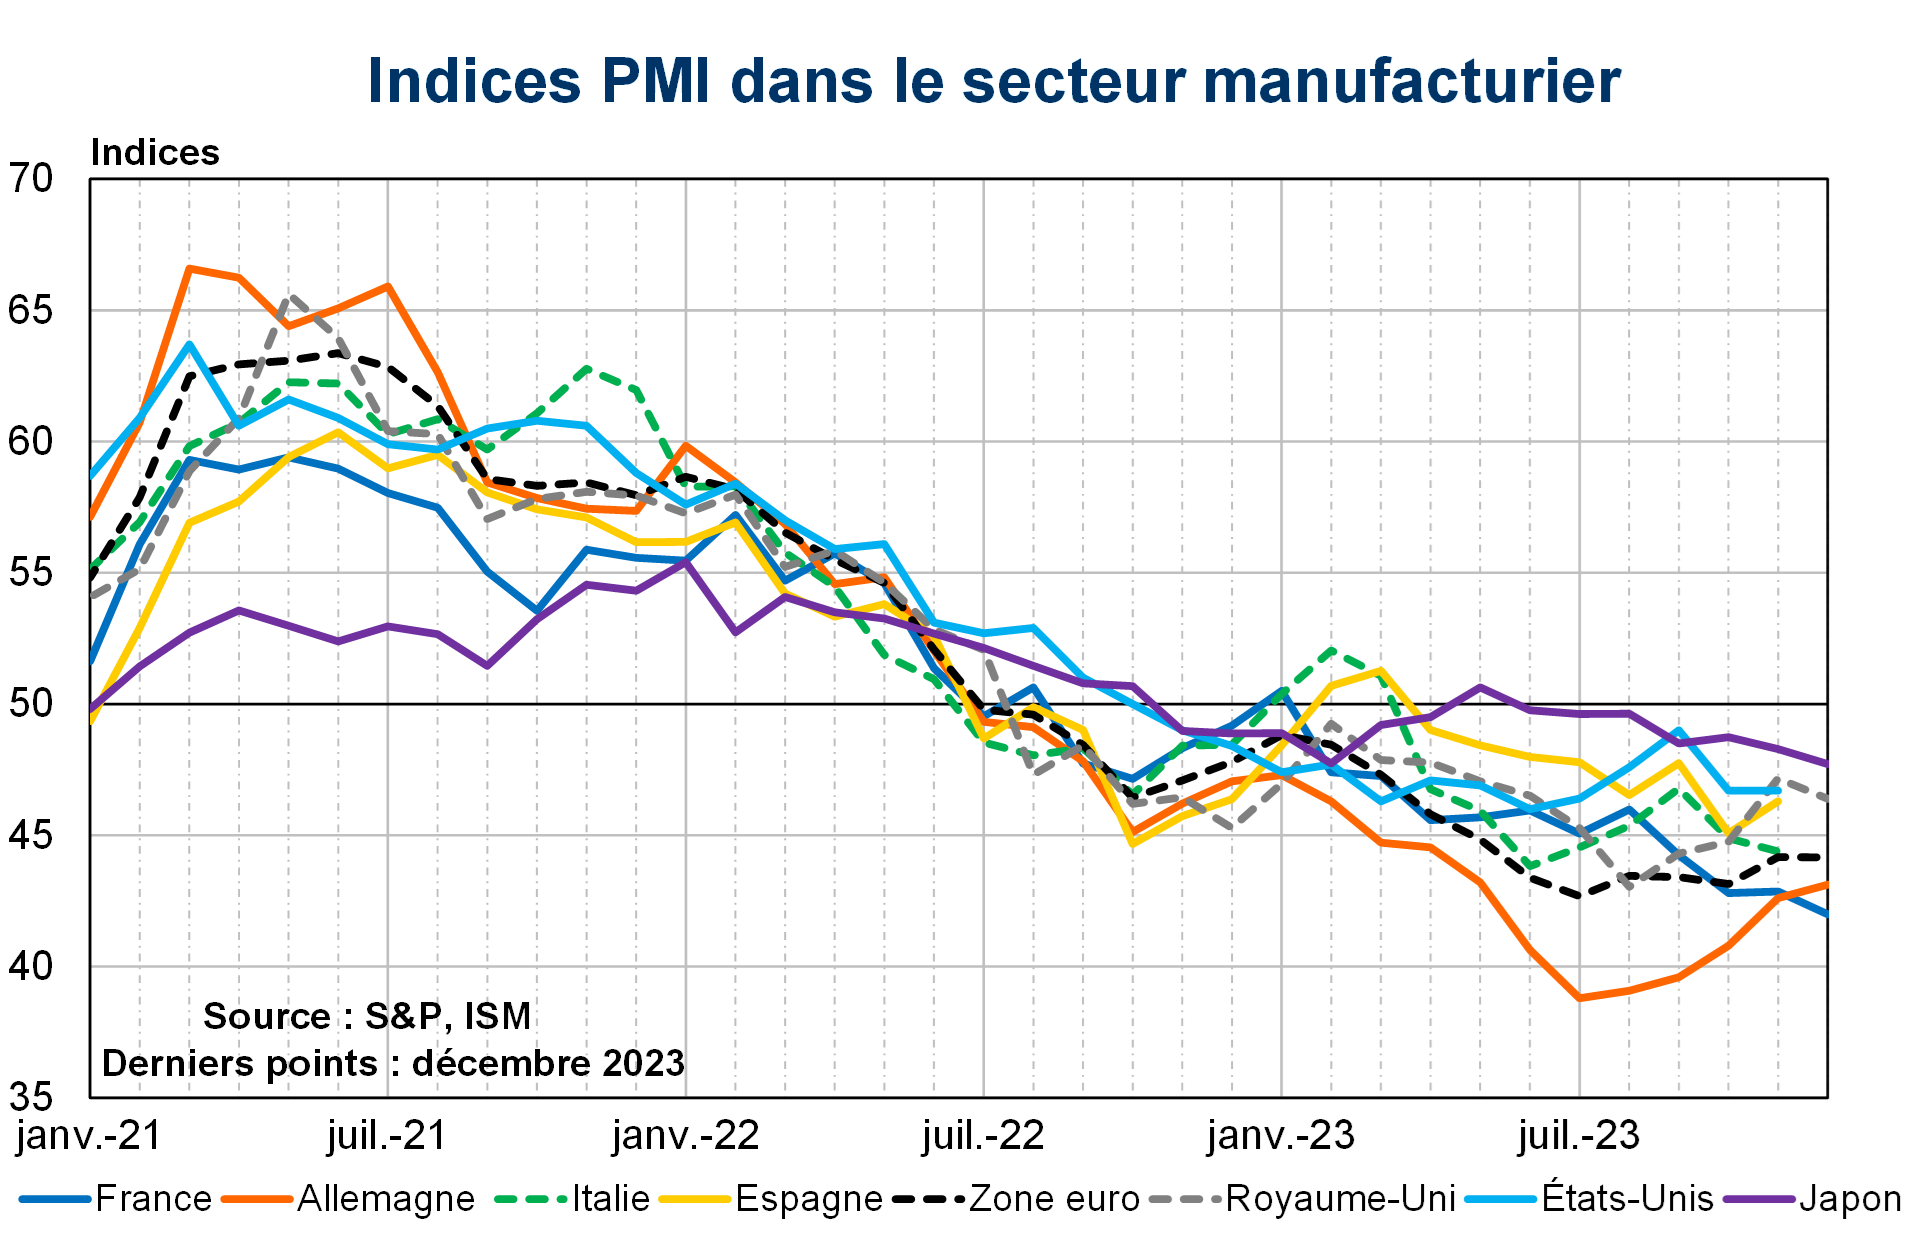 Indices PMI dans le secteur manufacturier